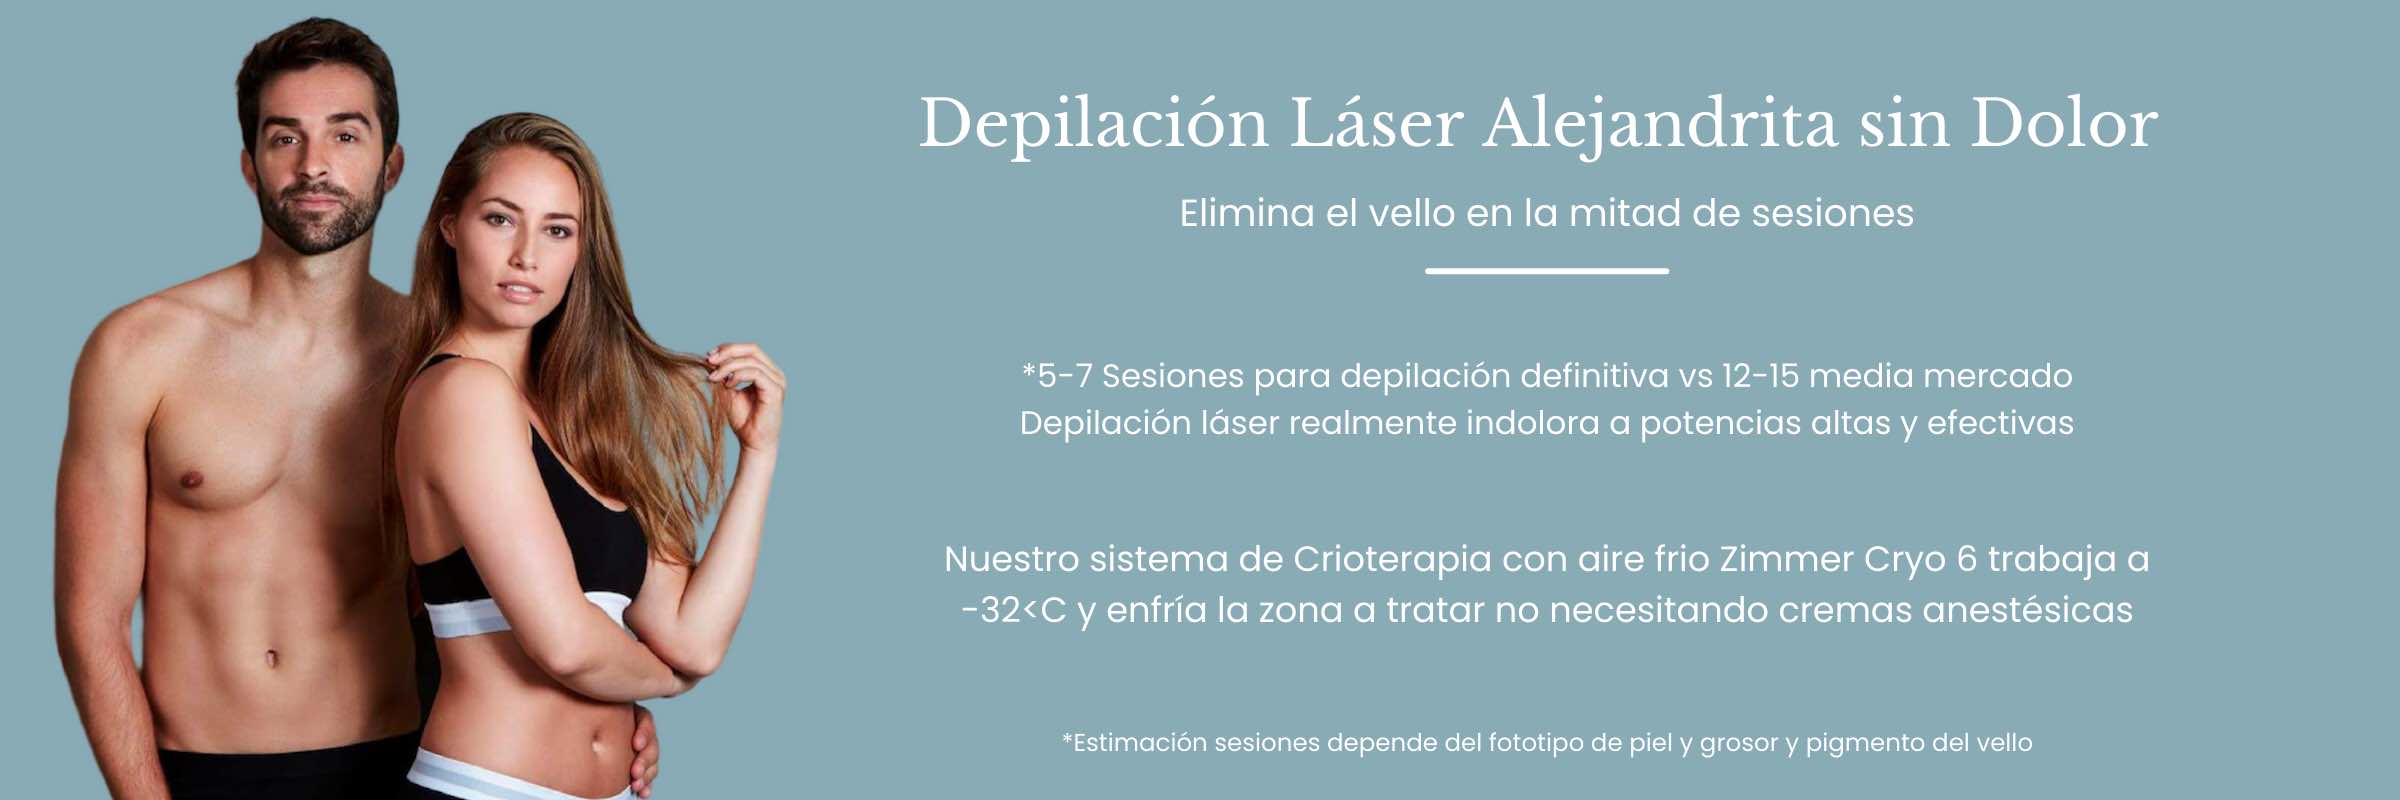 depilacion laser alejandrita sin dolor